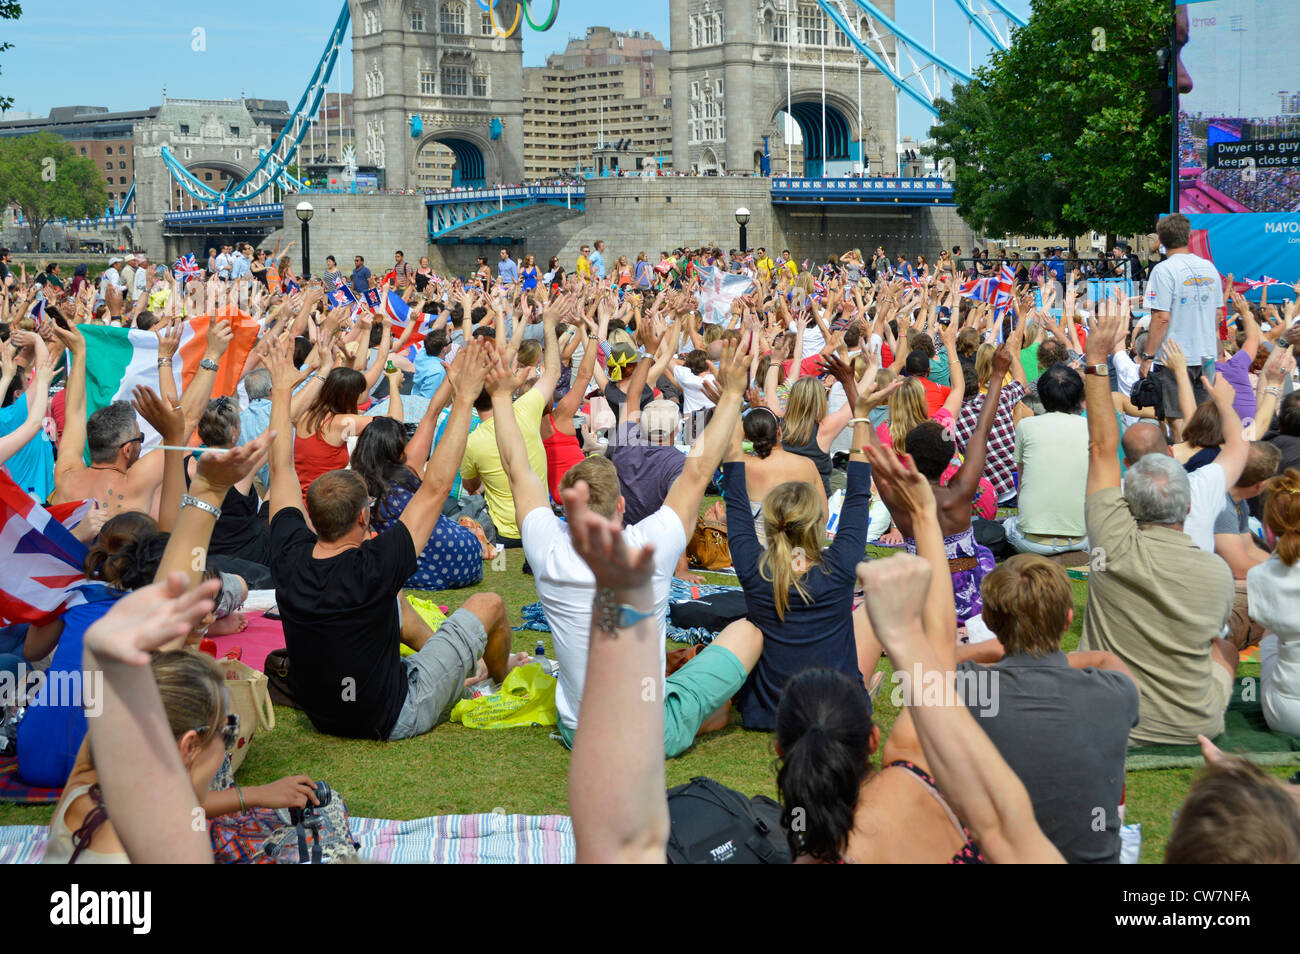 Les gens de foule s'assoient sur la pelouse des Jeux olympiques de Londres 2012 Téléviseur grand écran montre les mains vers le haut et le pont de la tour Potters Fields Park Southwark Angleterre Royaume-Uni Banque D'Images